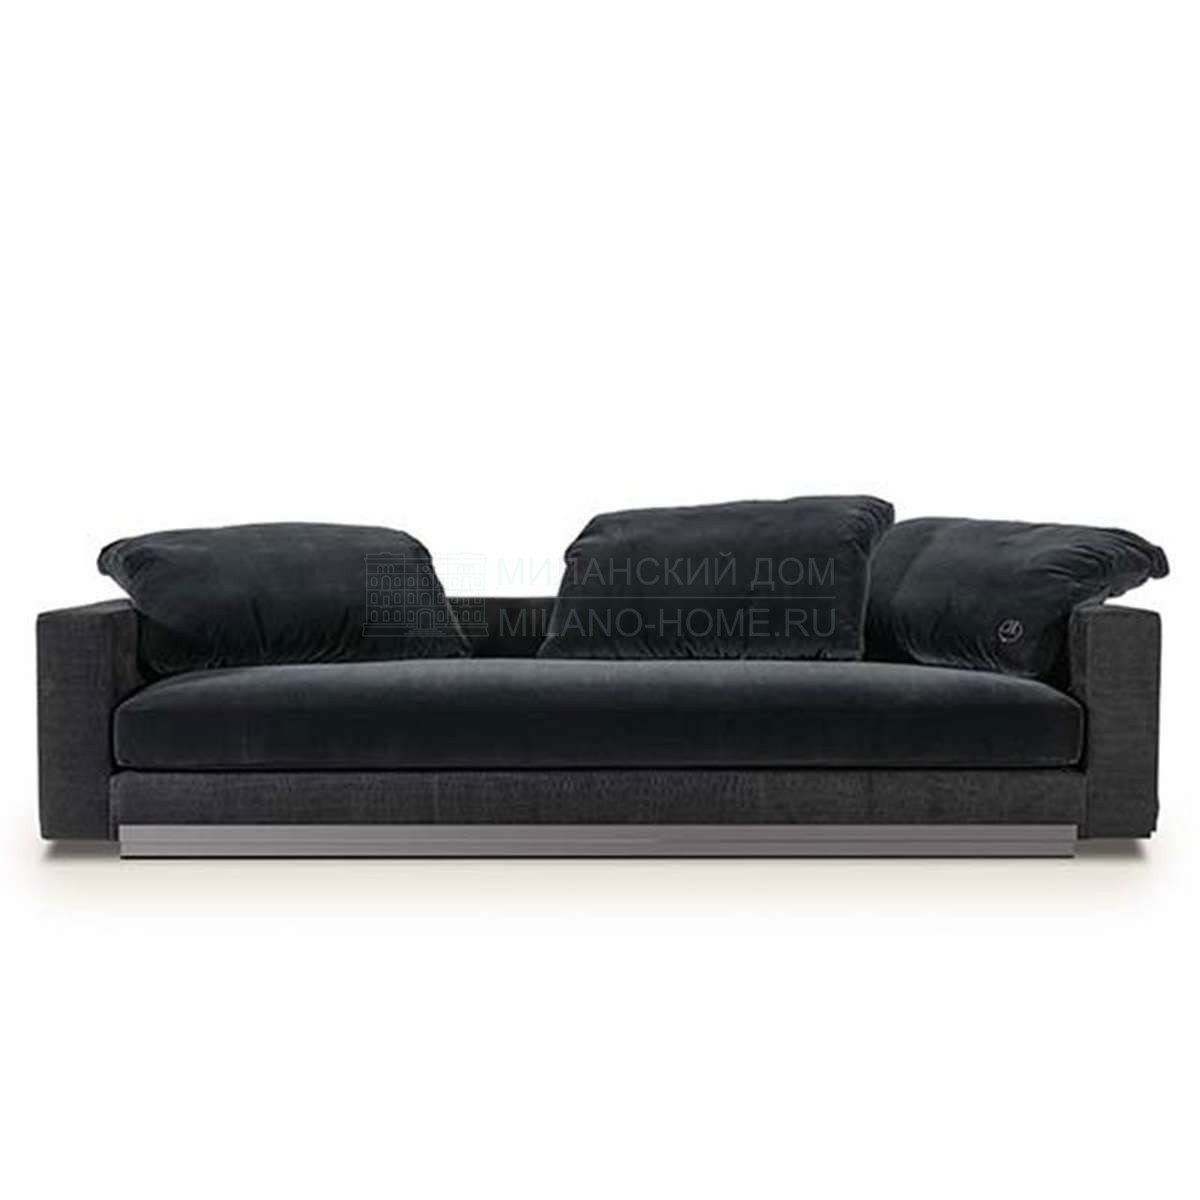 Прямой диван Andy sofa  из Италии фабрики FENDI Casa